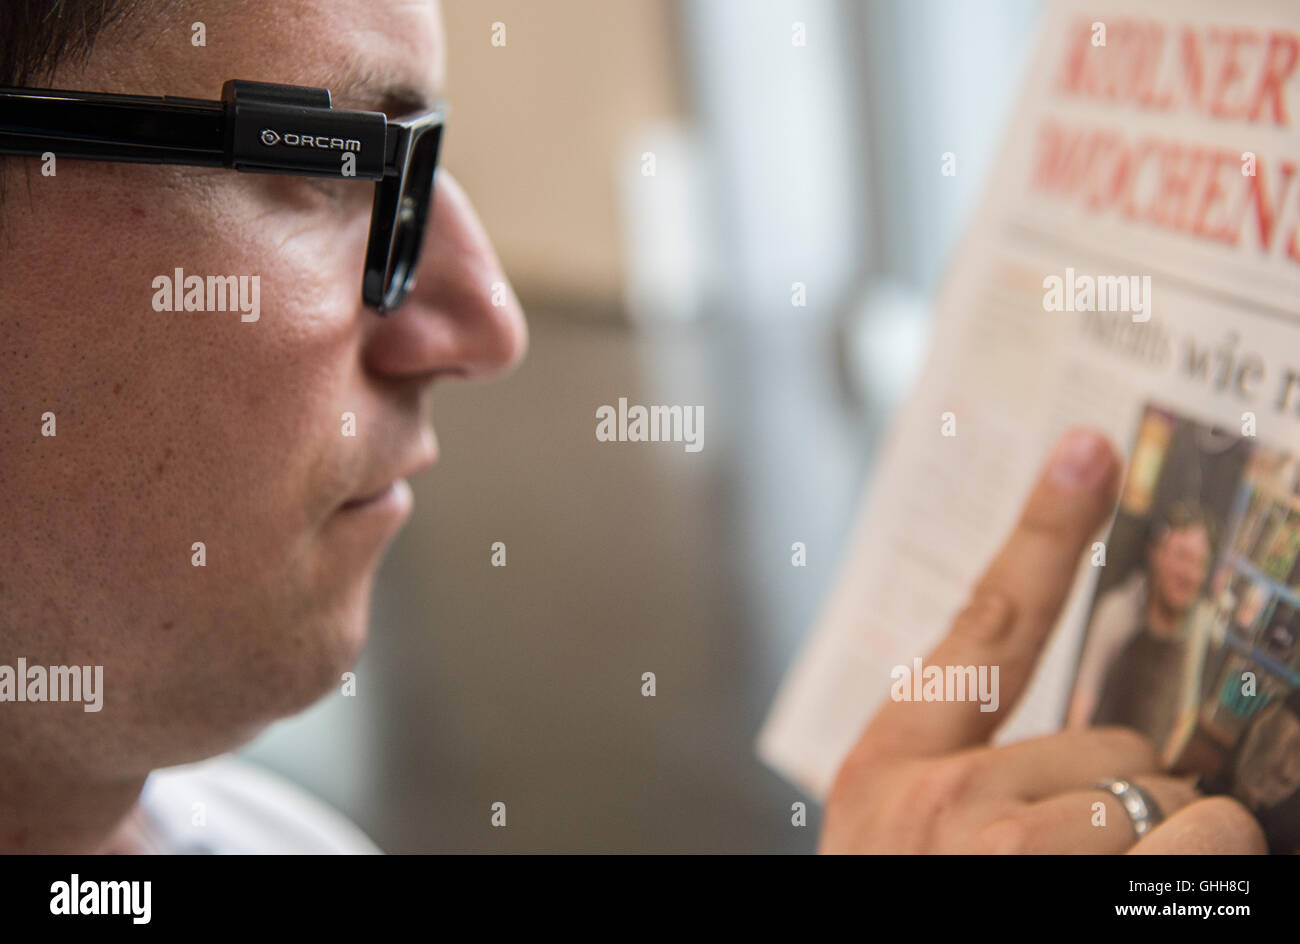 Düsseldorf, Allemagne. 28 Sep, 2016. Un homme portant l'OrCam 'webcam' sur ses lunettes lors de l'ouverture de la foire RehaCare international "soins" à Düsseldorf, Allemagne, 28 septembre 2016. La webcam est un assistant de lecture pour les personnes aveugles et malvoyantes. Il permet la lecture de texte à voix haute et à reconnaître les visages. La foire est ouverte jusqu'au 1er octobre 2016. PHOTO : WOLFRAM KASTL/dpa/Alamy Live News Banque D'Images